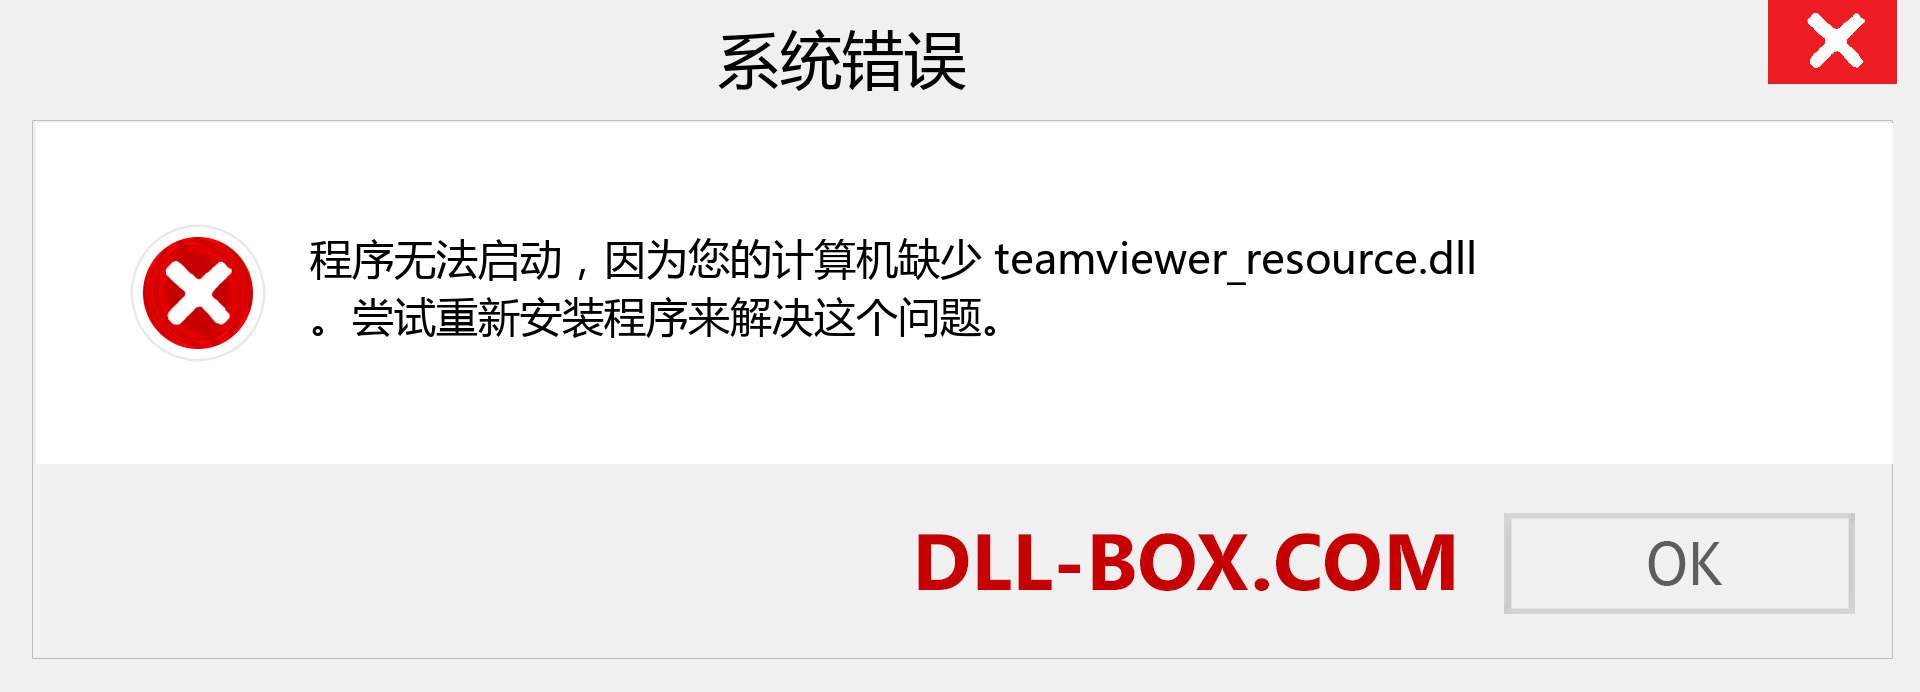 teamviewer_resource.dll 文件丢失？。 适用于 Windows 7、8、10 的下载 - 修复 Windows、照片、图像上的 teamviewer_resource dll 丢失错误